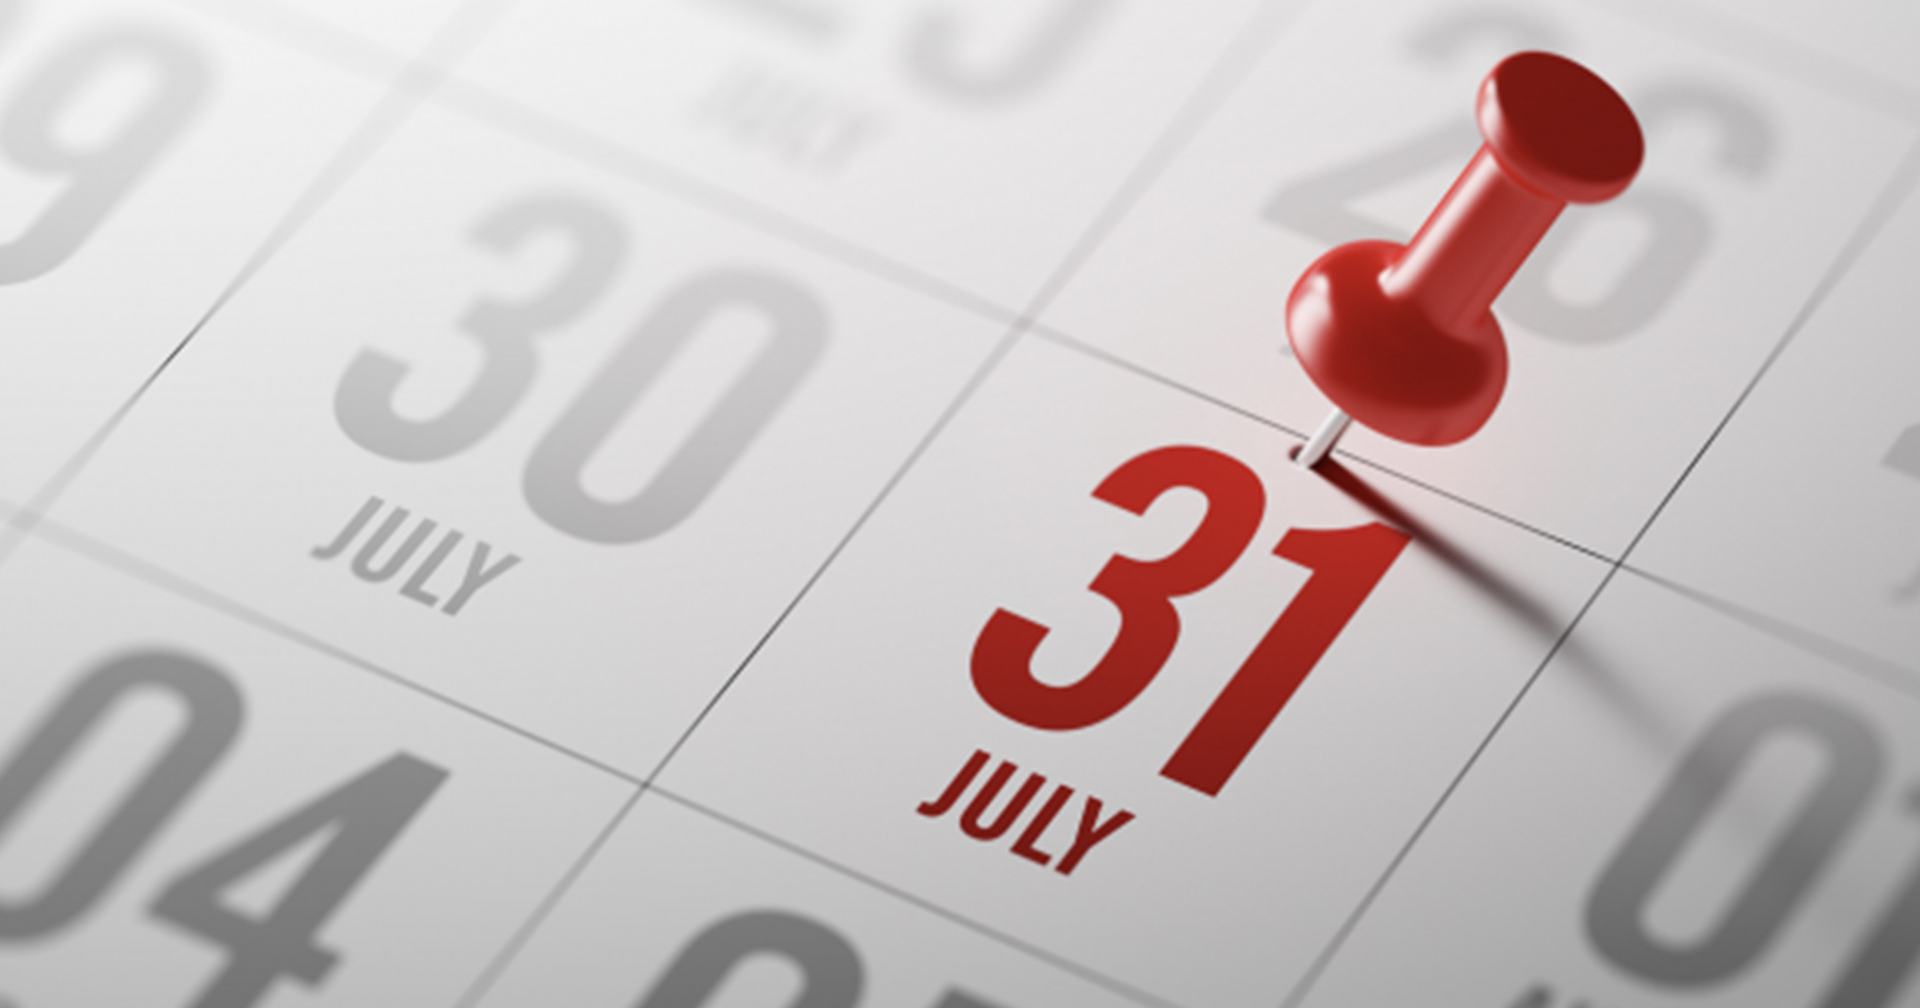 เหตุใด ‘กรกฎาคม-สิงหาคม’ ถึงเป็นสองเดือนที่มี 31 วันติดกัน